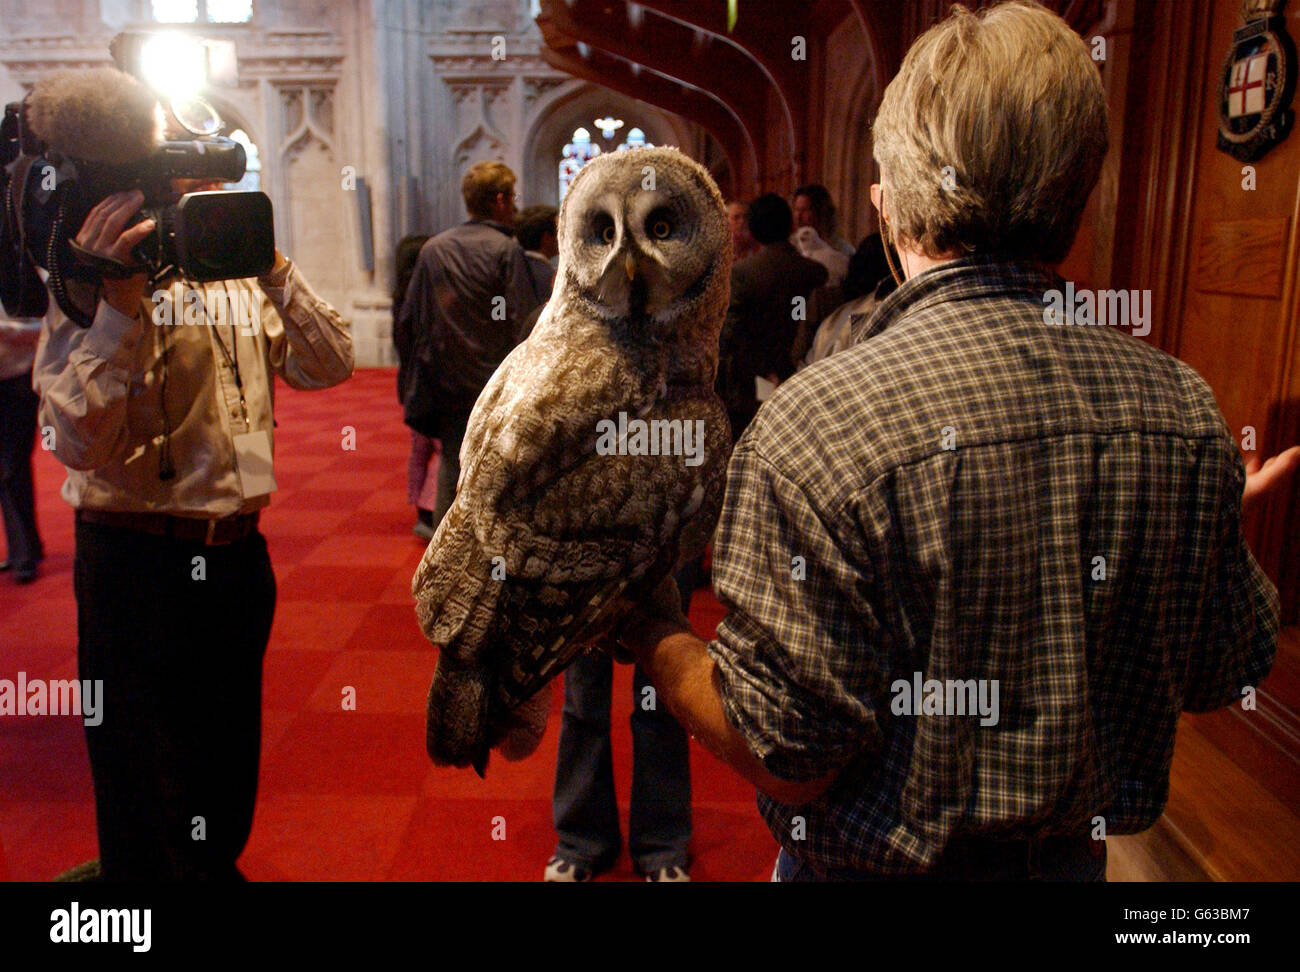 Harry Potter - Owl.La chouette du dernier film Harry Potter 'Harry Potter et la Chambre des secretss' pendant un photocall. Banque D'Images